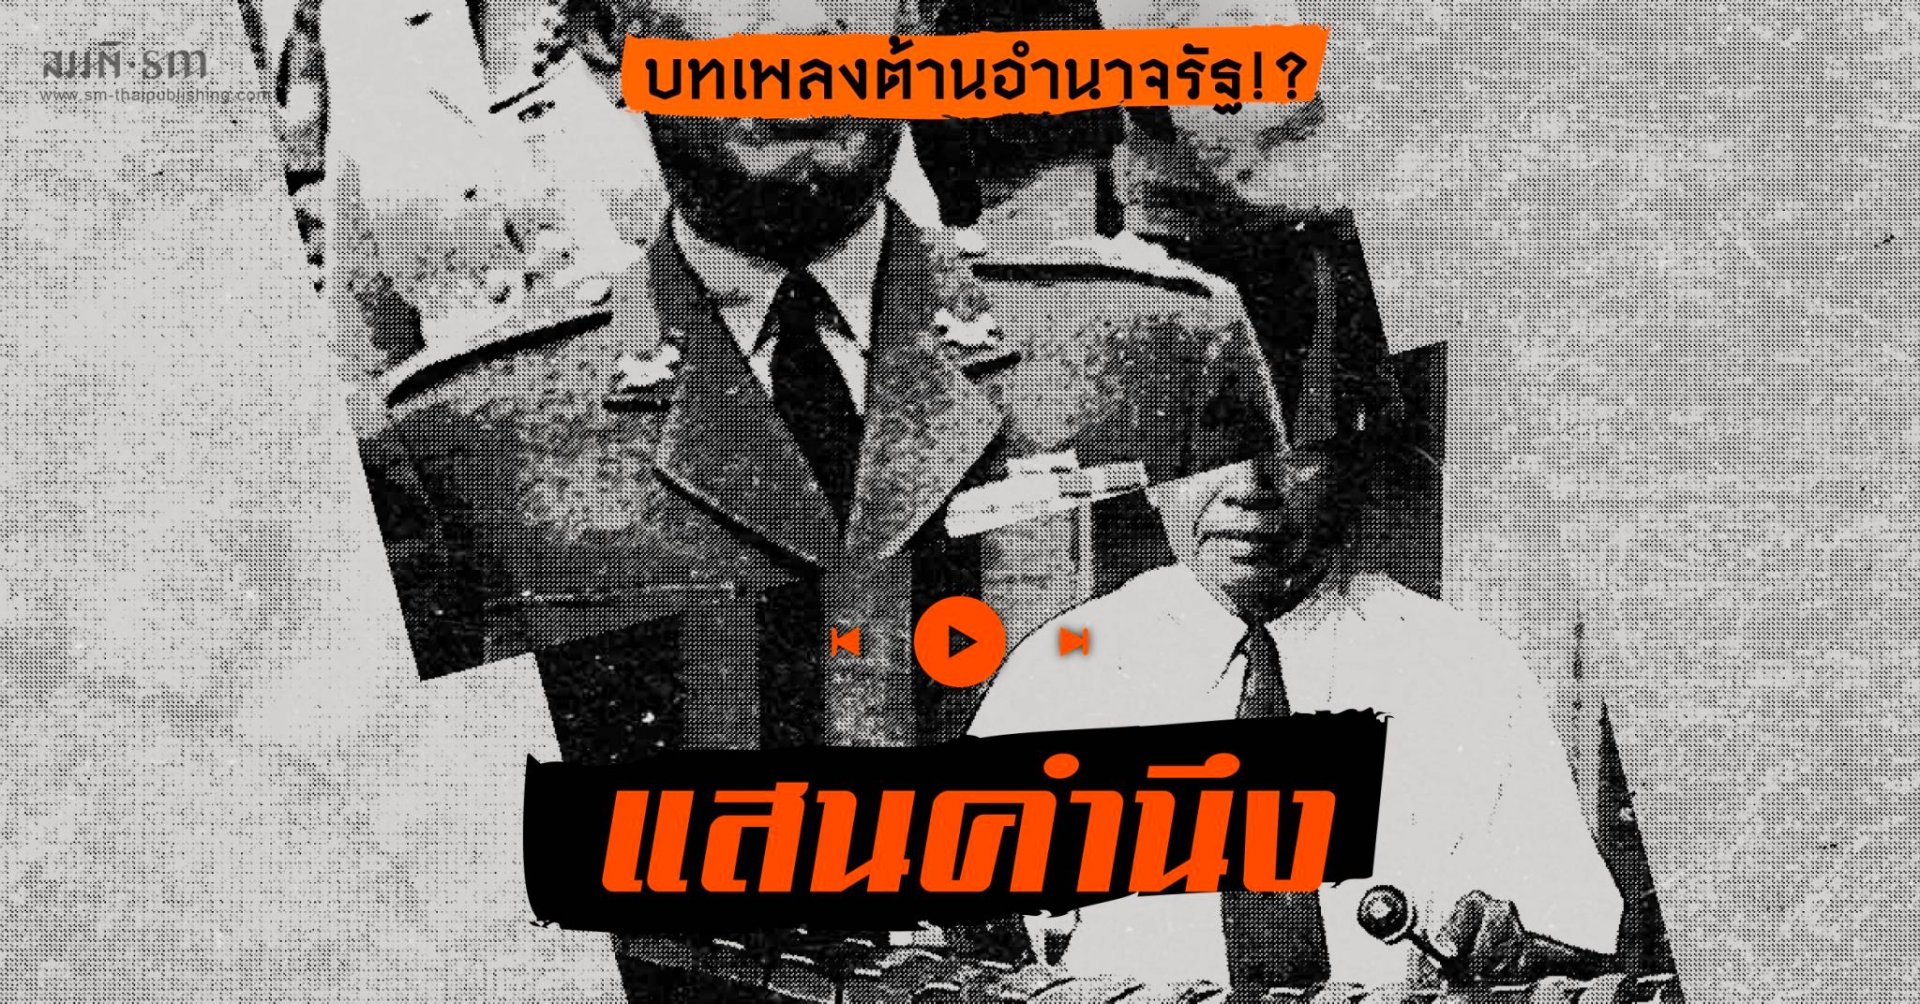 ดนตรีไทยกับบทเพลงต่อต้านอำนาจรัฐ!!!